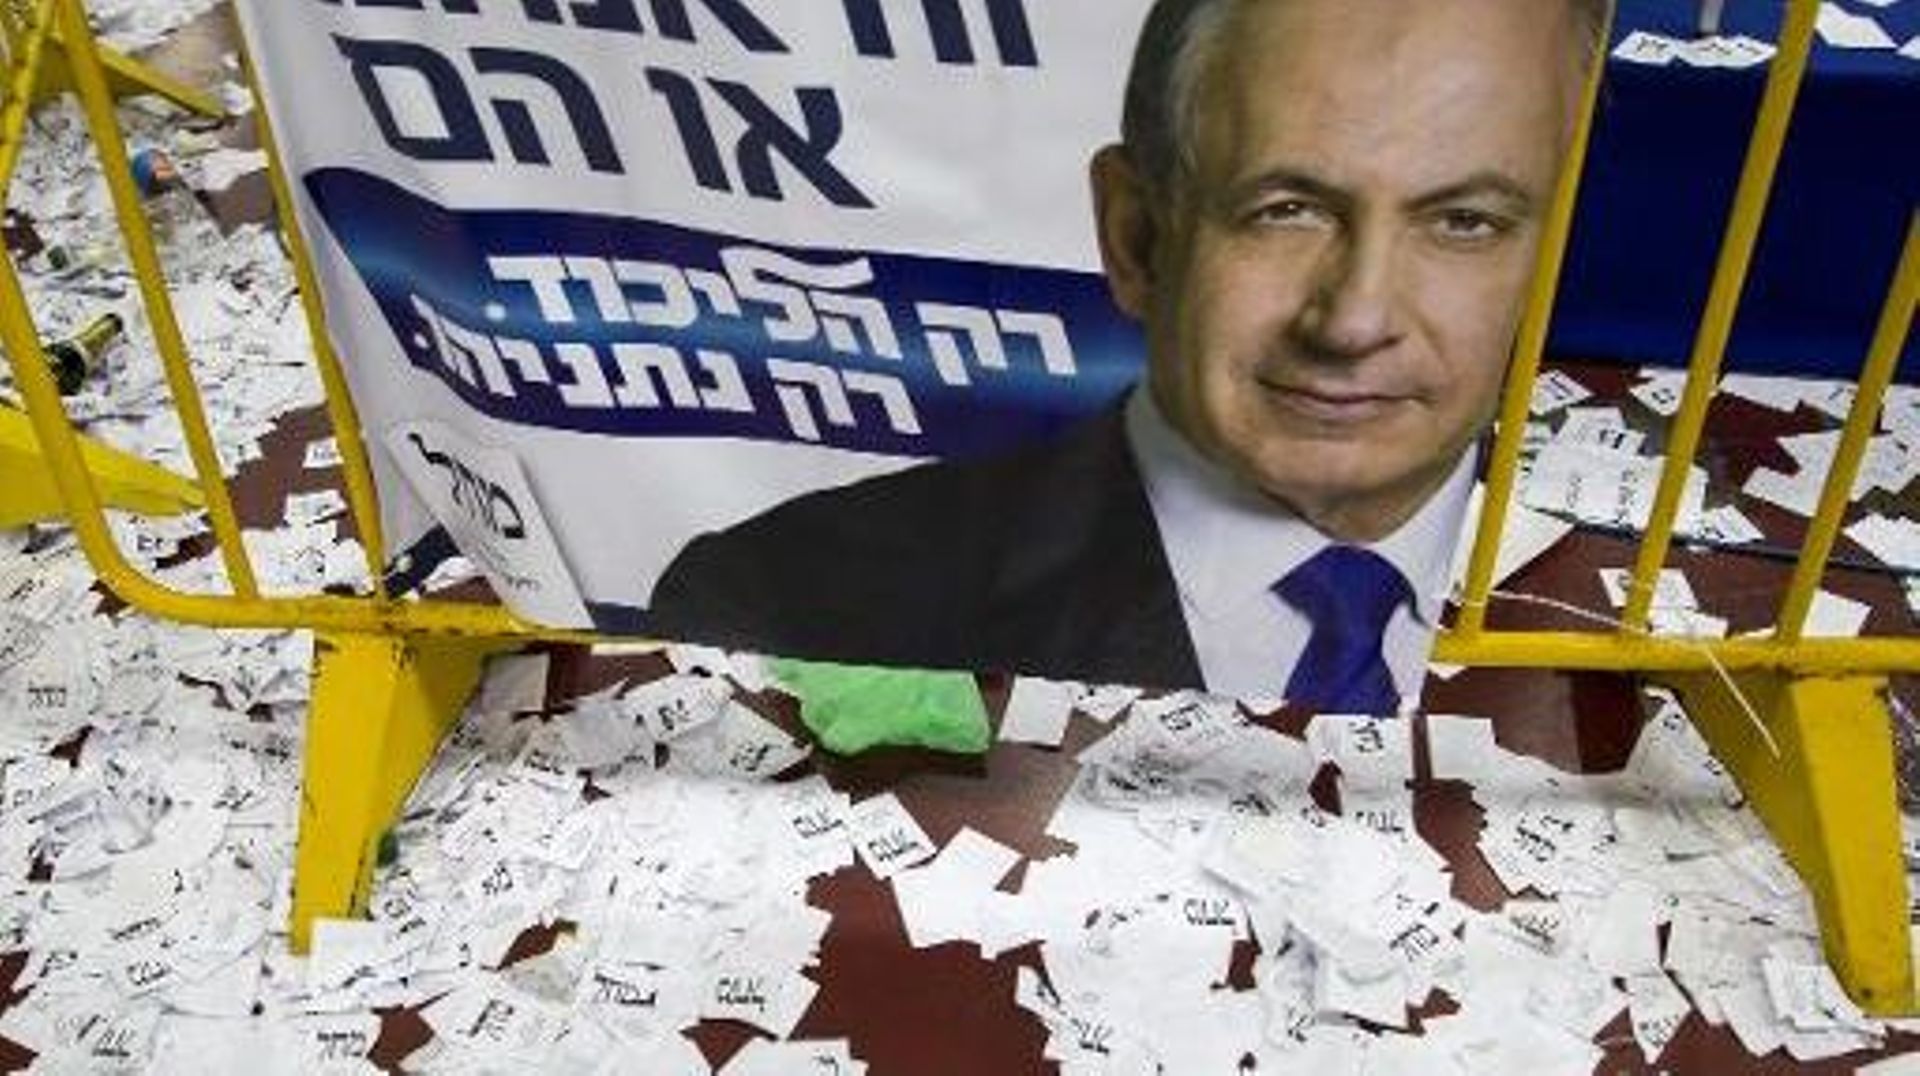 Des bulletins de vote autour d'une affiche de campagne du Premier ministre sortant et candidat du Likoud aux législatives israéliennes Benjamin Netanyahu, le 18 mars 2015 à Tel-Aviv